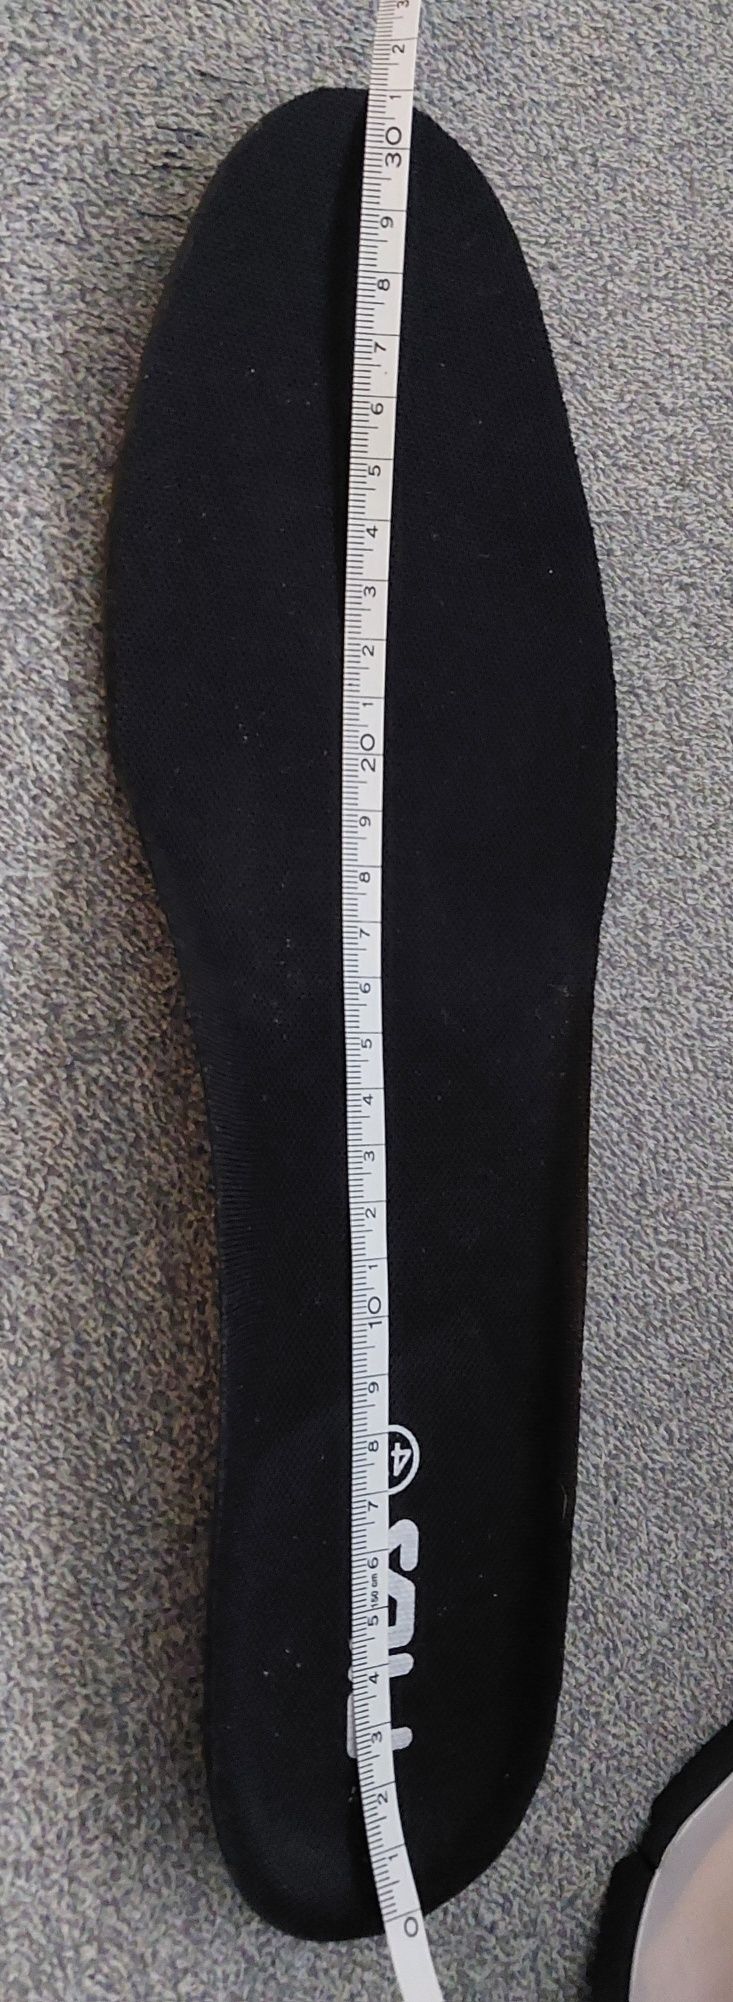 Buty męskie Fila nowe roz 47 (31cm)